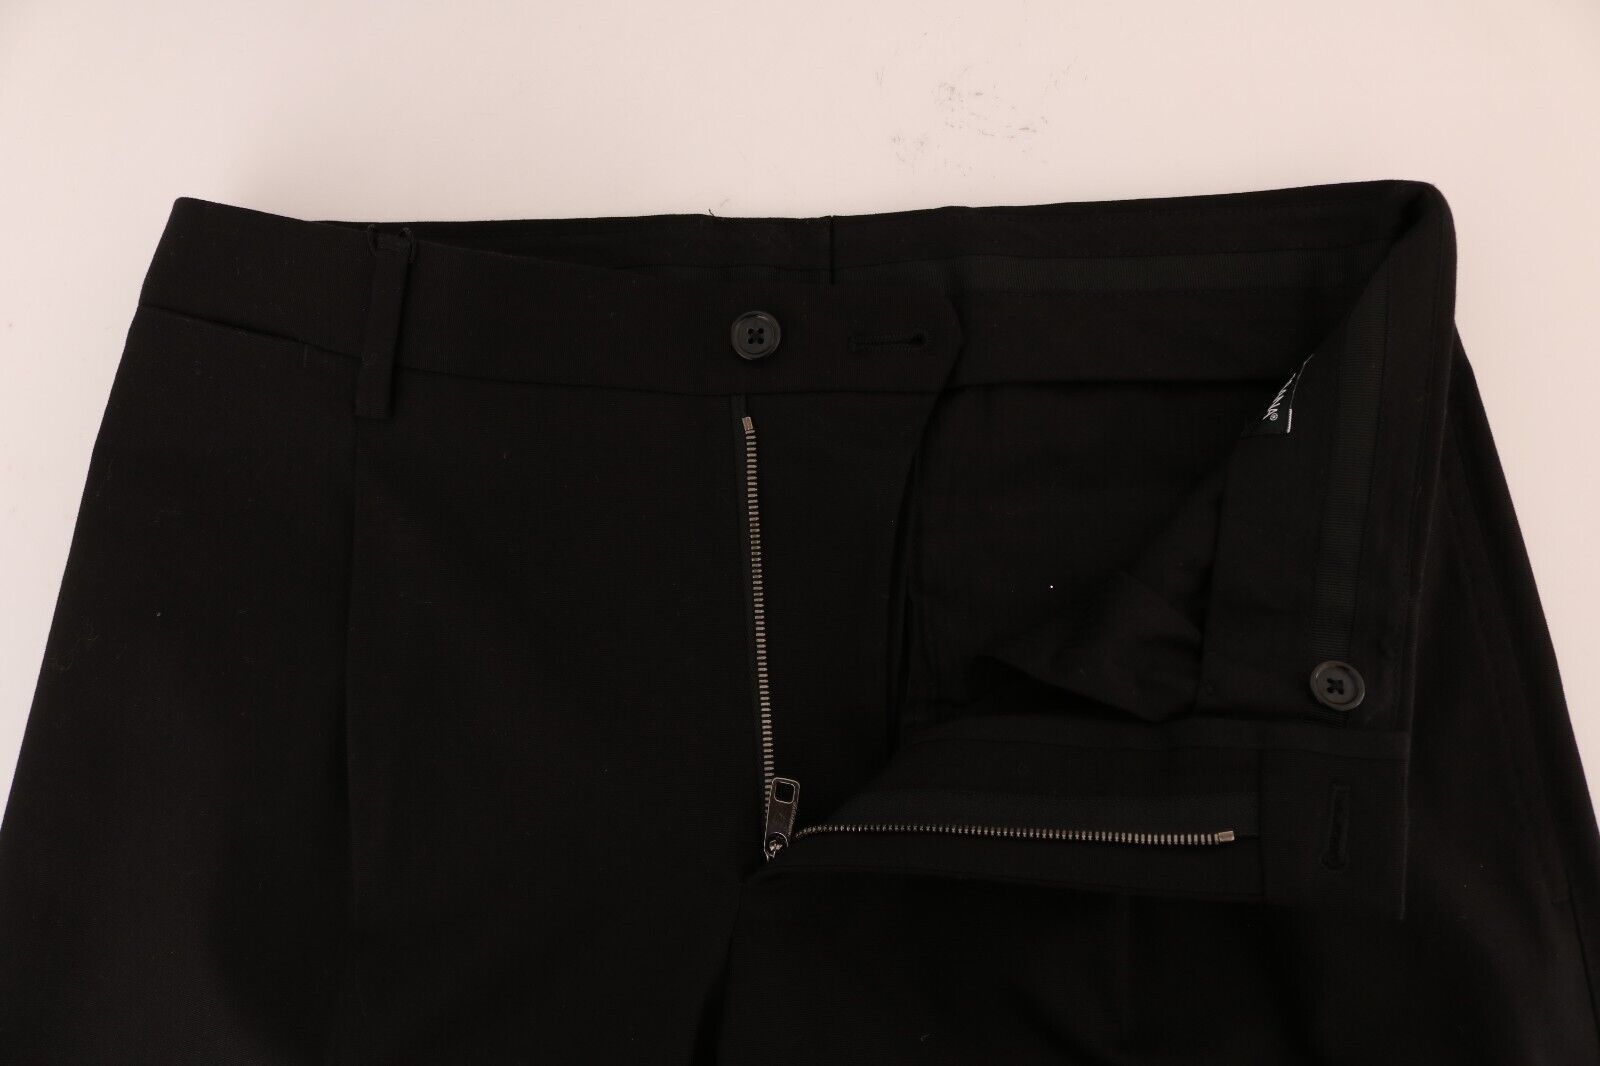 Dolce & Gabbana Elegant Black Cotton Stretch Pants